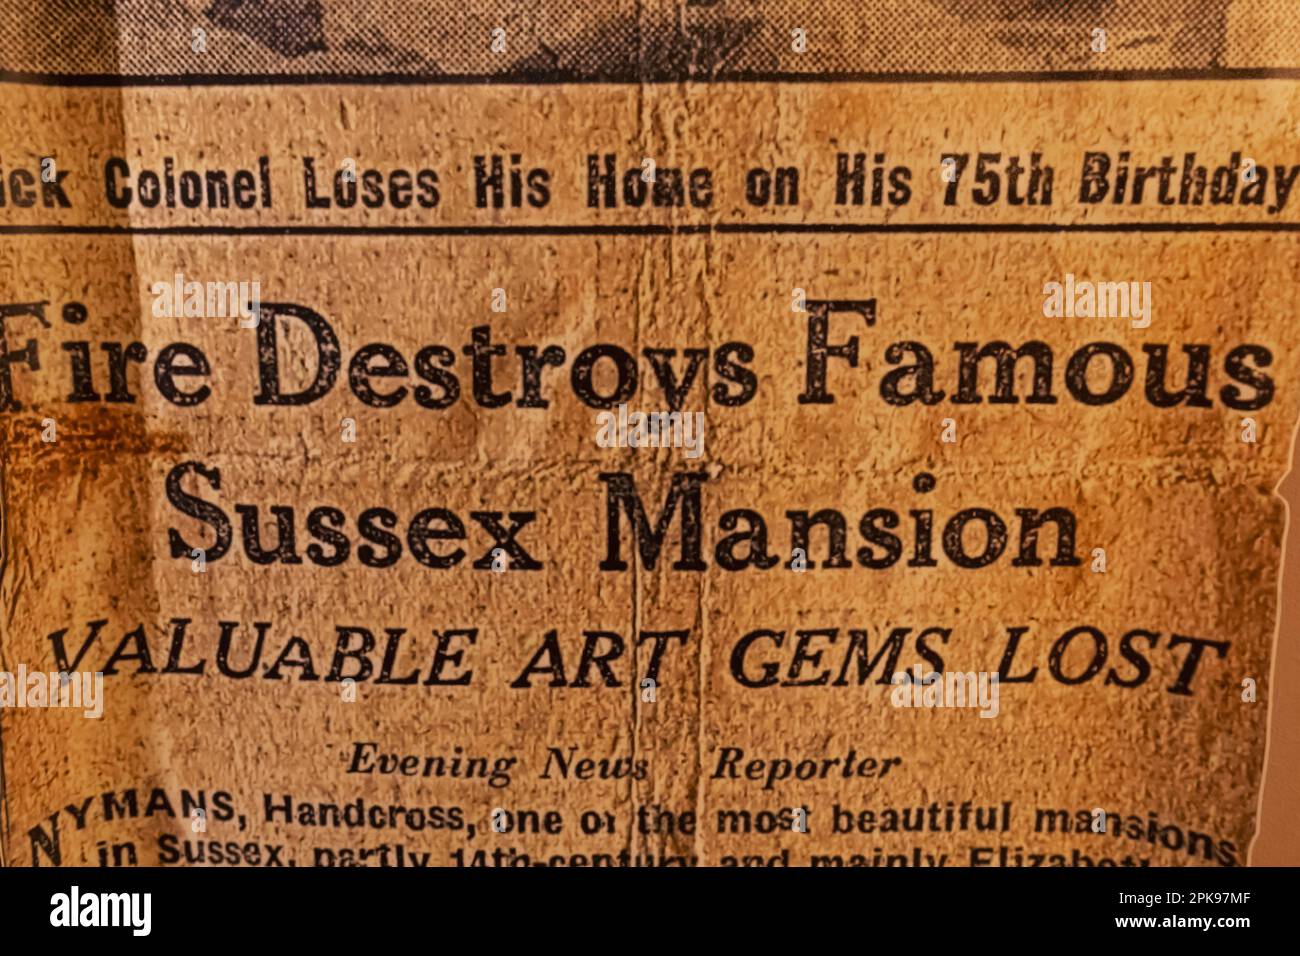 England, West Sussex, Handcross, Nymans, House and Gardens, Abendnachrichten Schlagzeilen der Zeitung über die Zerstörung Nymans durch Feuer von 1947 Stockfoto